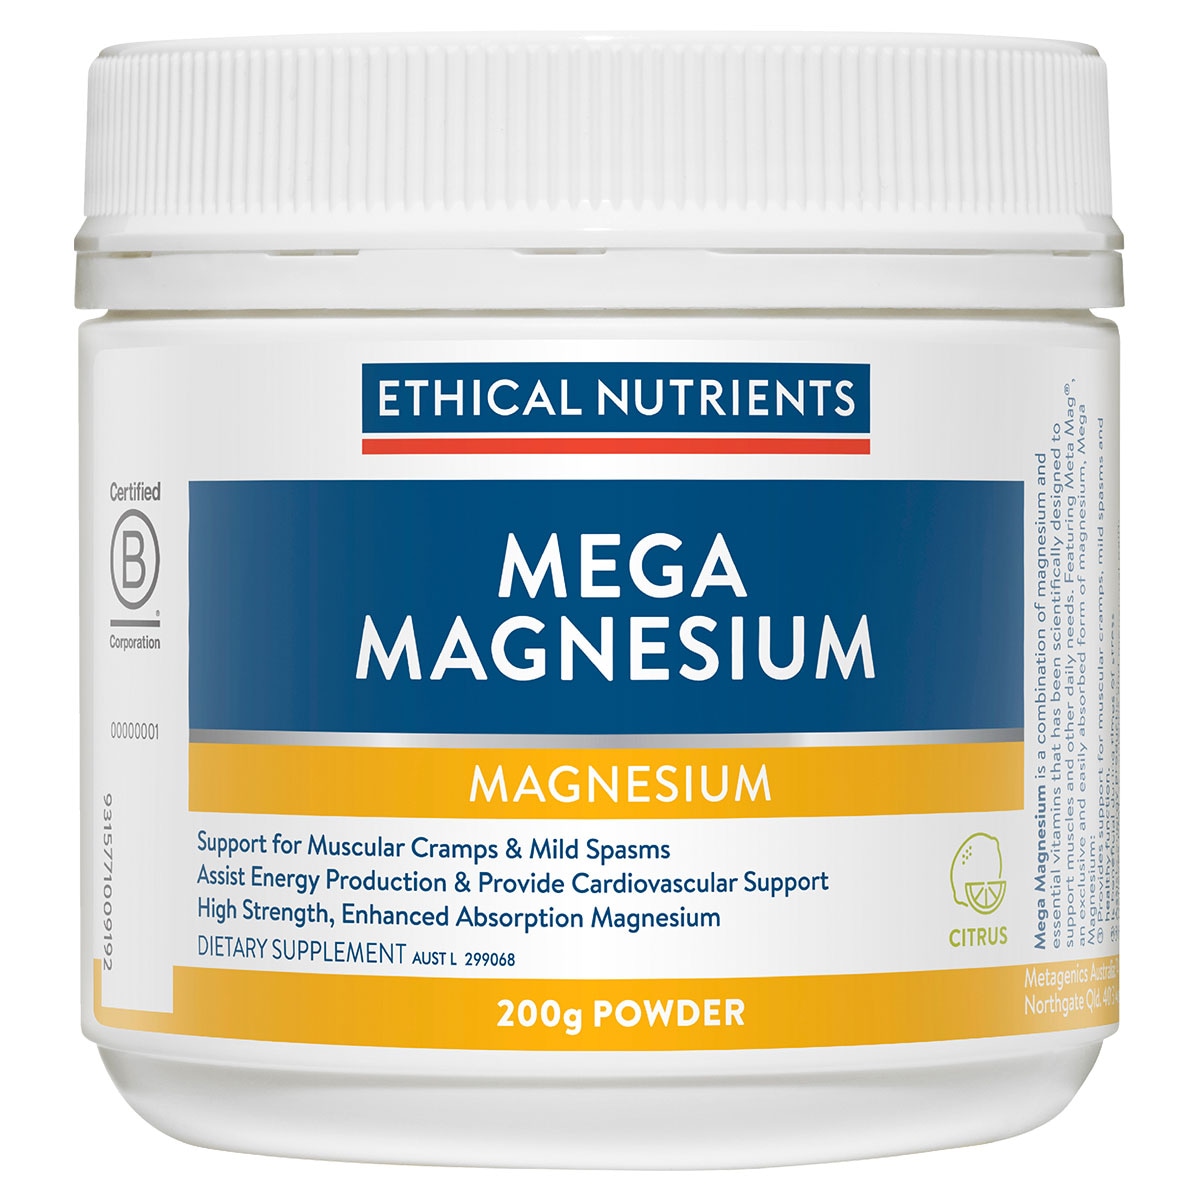 Ethical Nutrients Mega Magnesium Citrus 200g Powder